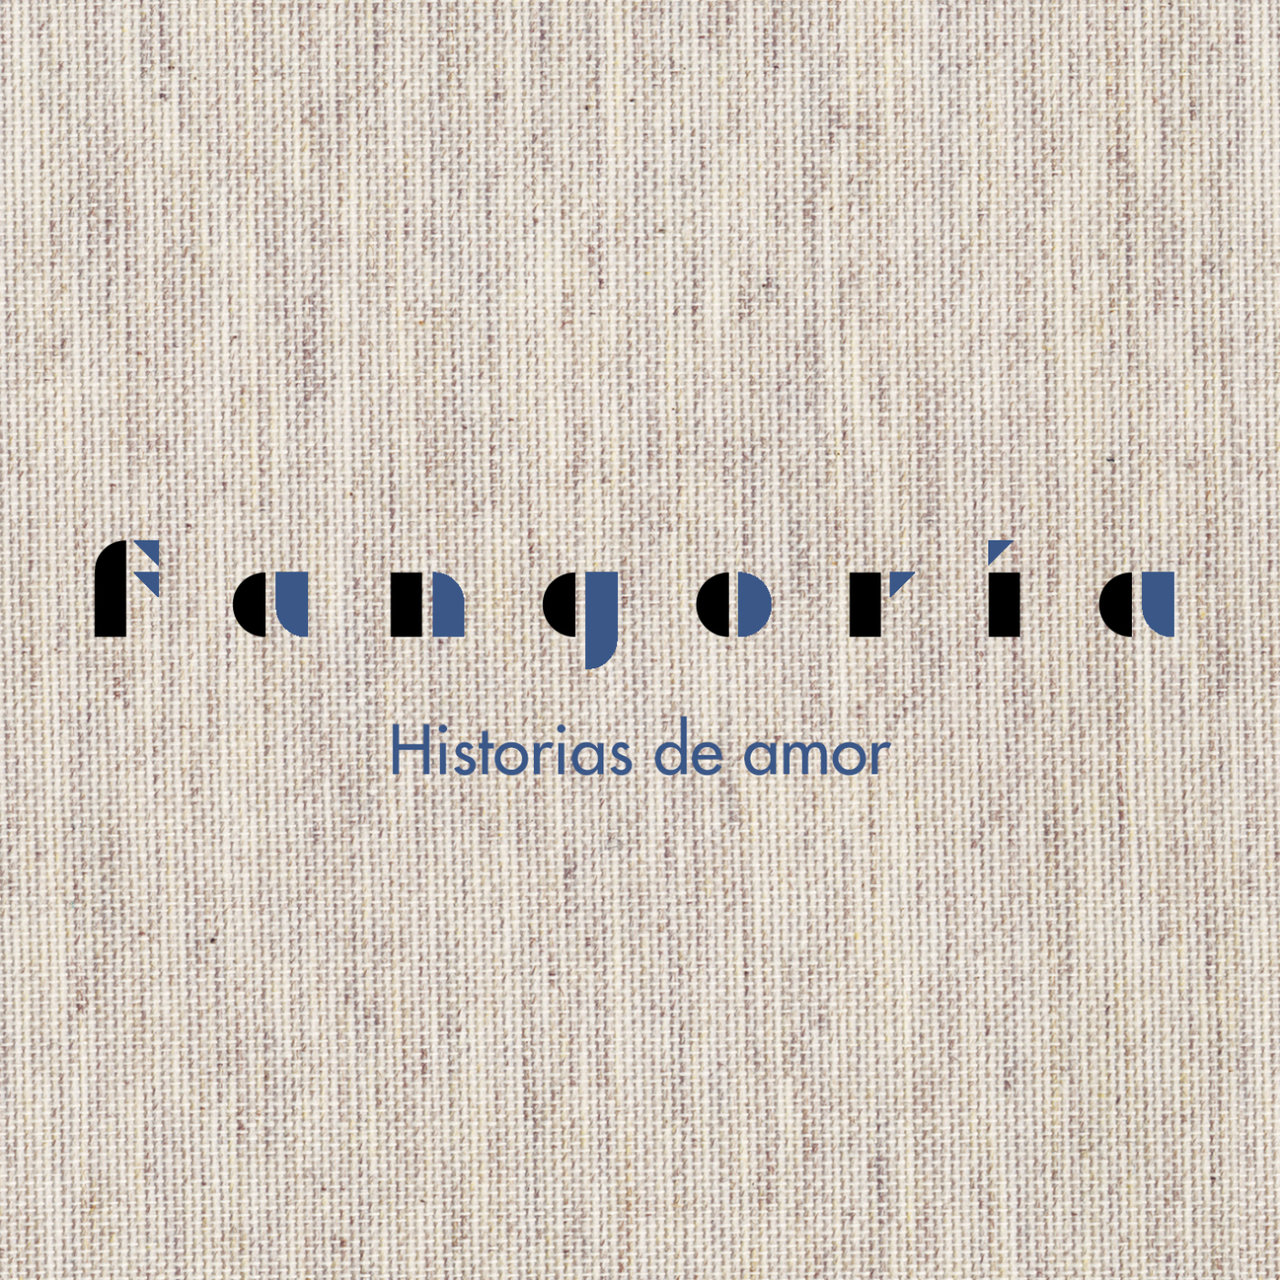 Fangoria Historias de amor cover artwork